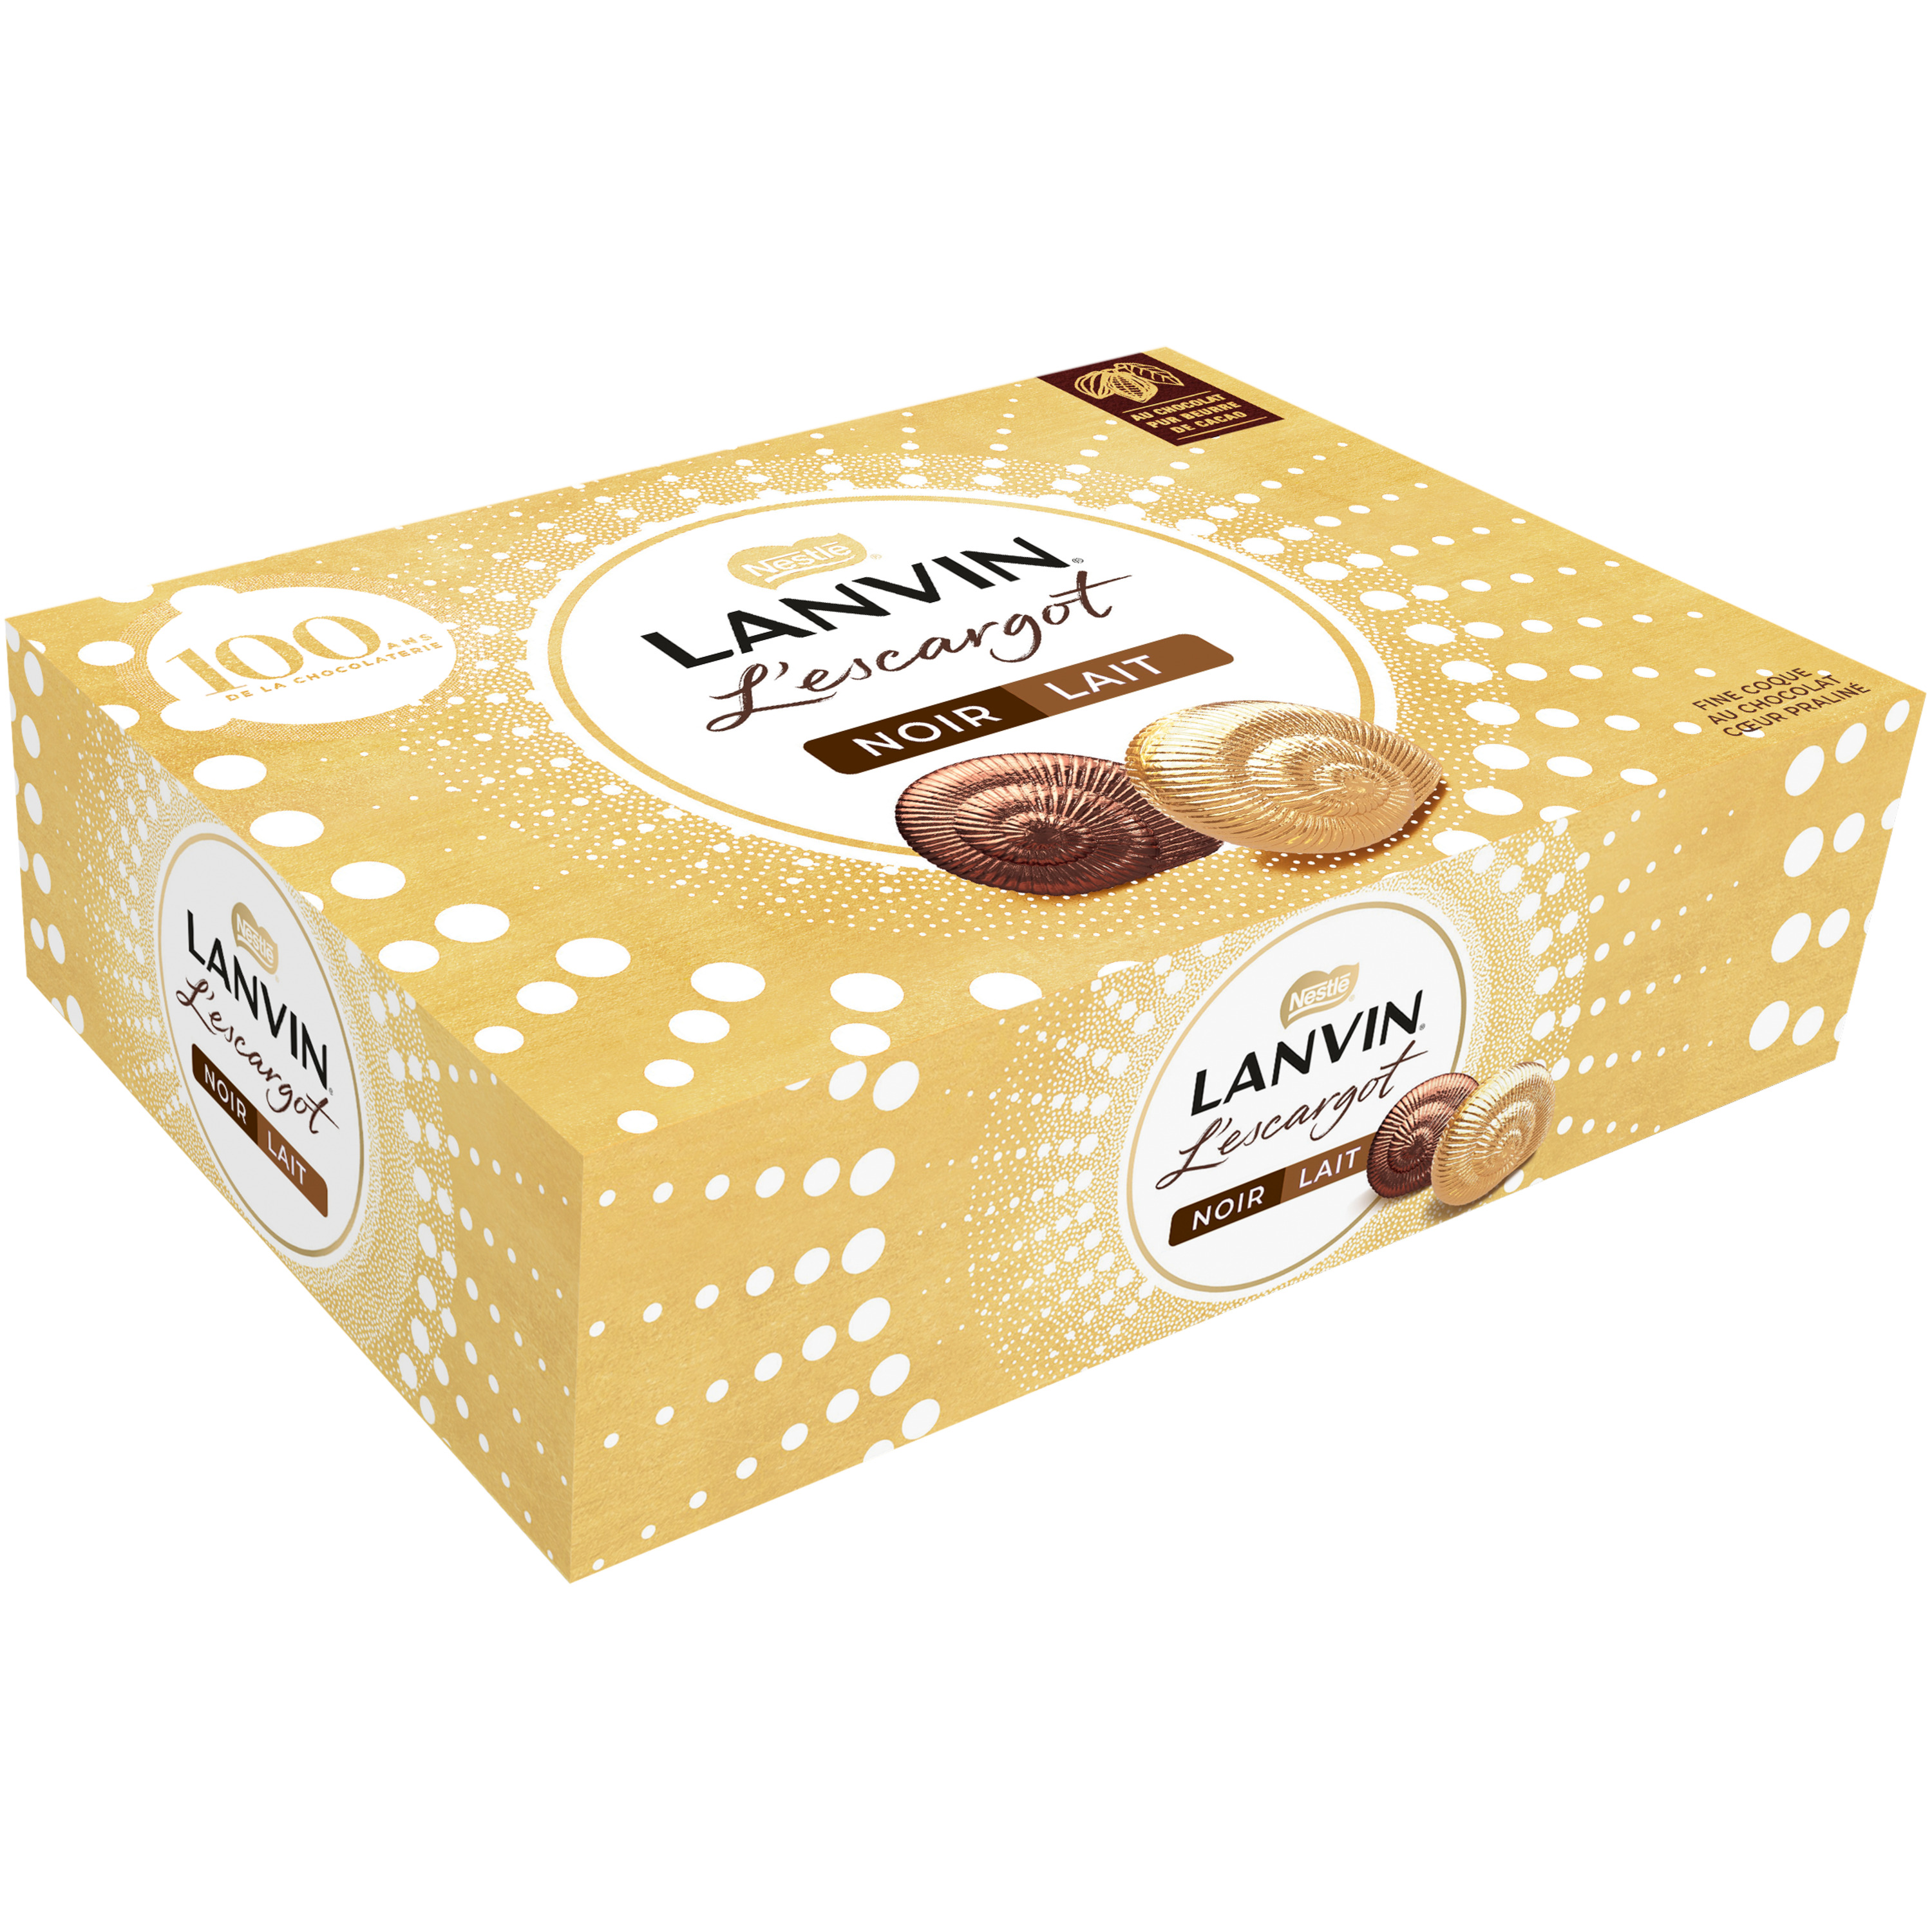 L'Escargot - Bonbons de chocolat au lait fourrés au praline - Lanvin - 195 g